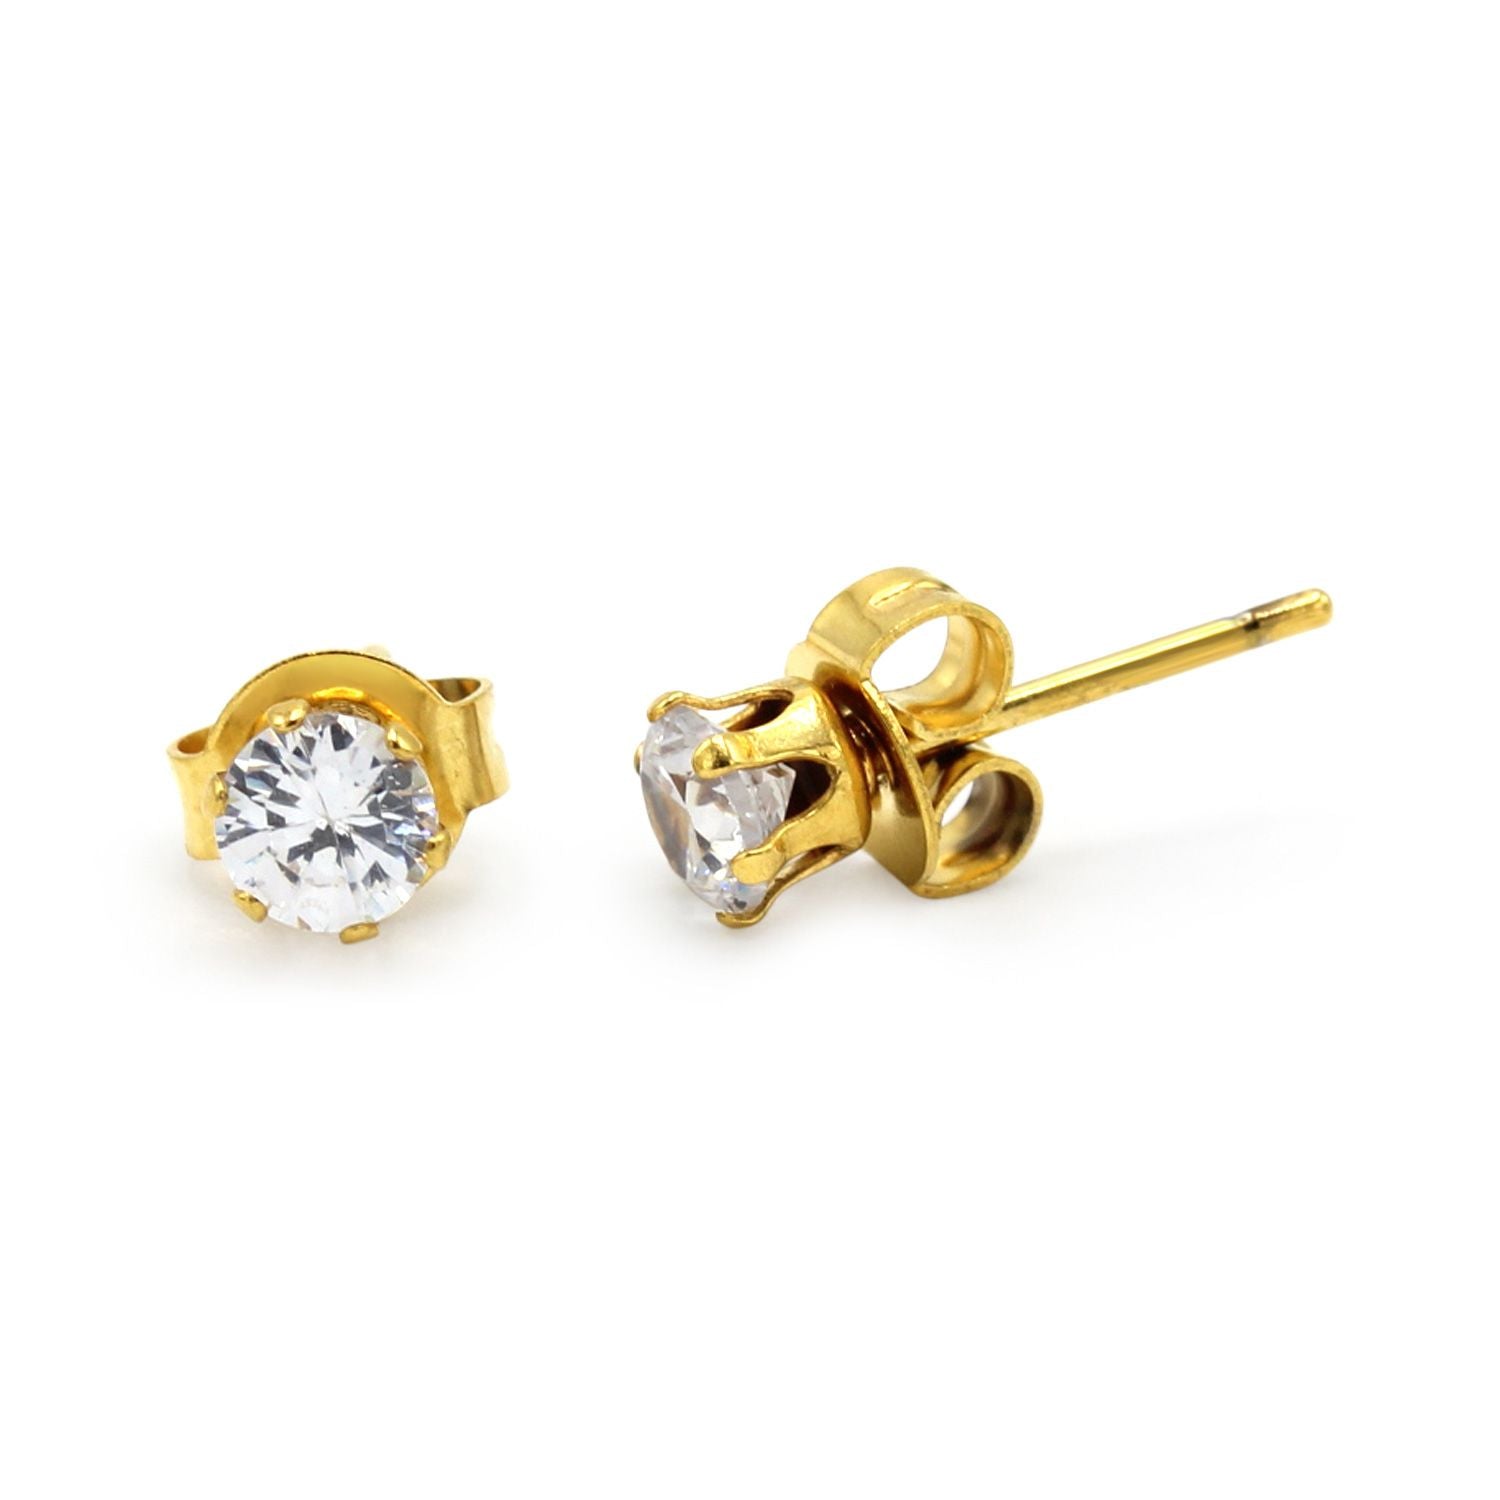 Cubic Zirconia Round 14K Gold Filled Stud Earrings Stainless Steel Jewelry Men Women